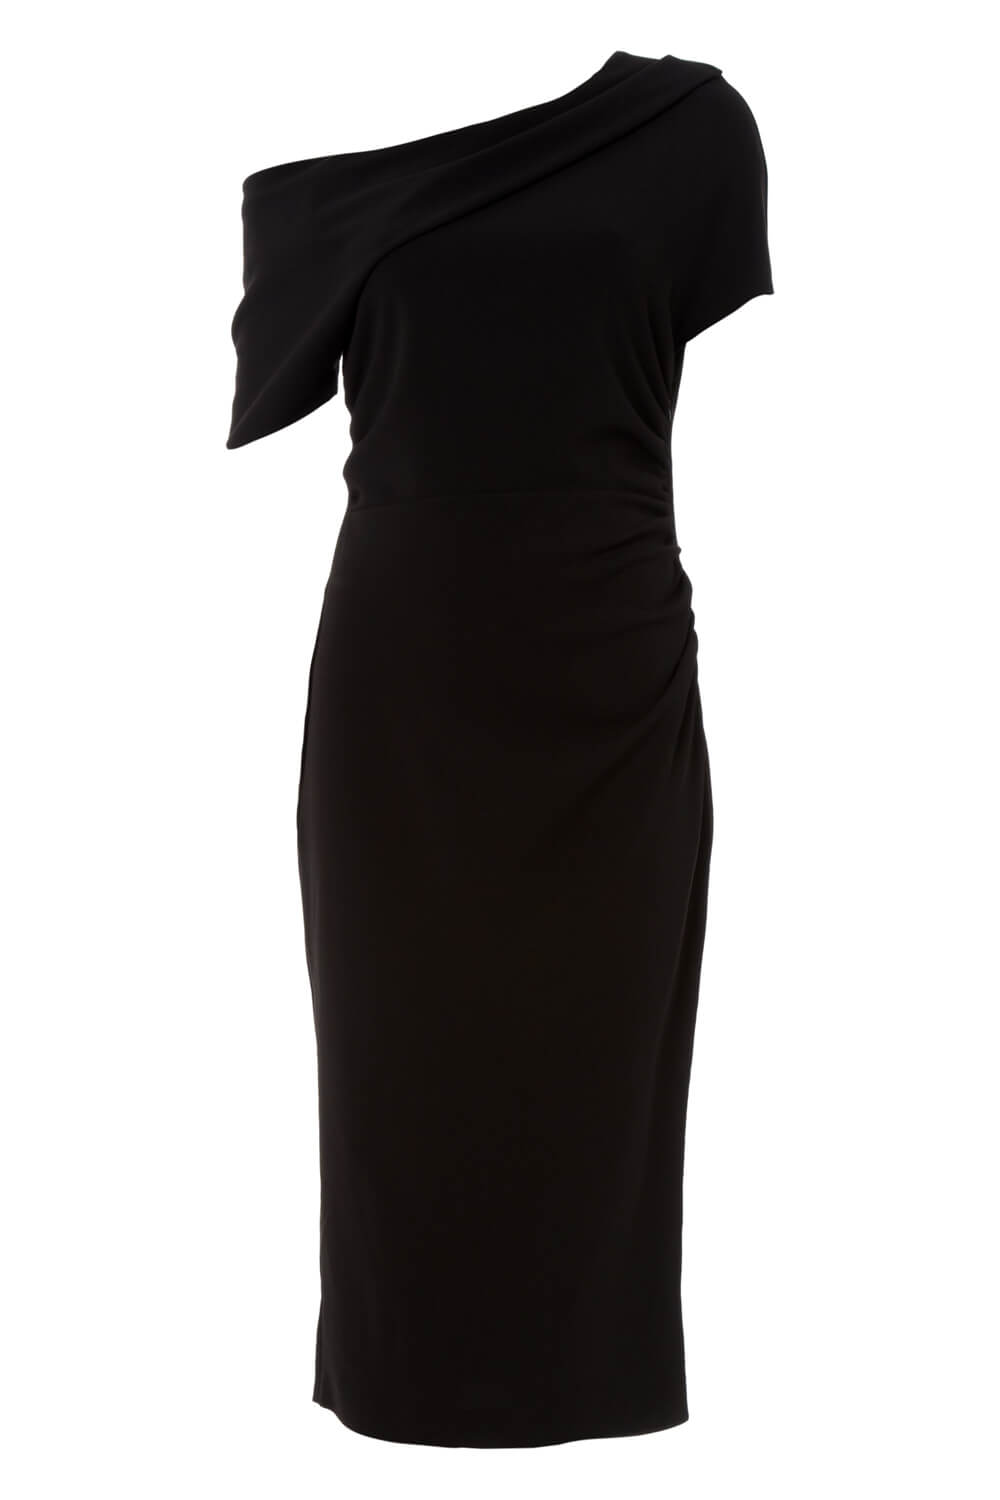 Black One Shoulder Crepe Dress, Image 5 of 5